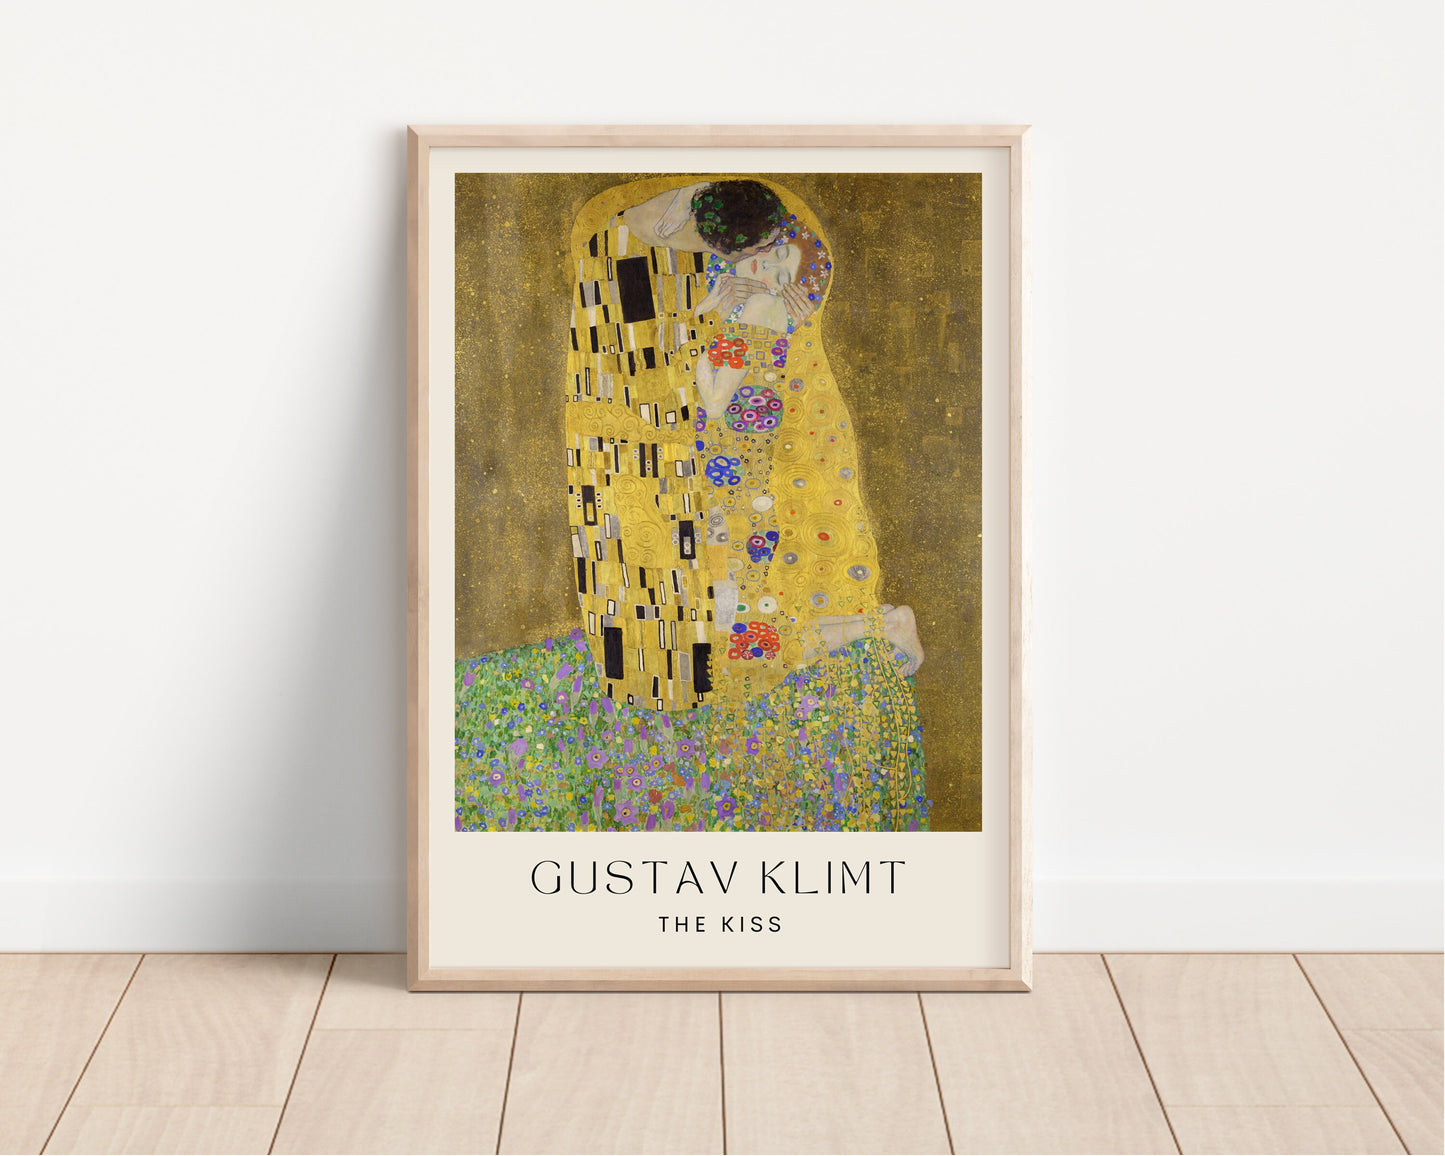 Gustav Klimt Art Print, The Kiss print, Gustav Klimt The Kiss, Art, Museum Poster, Vintage Poster, Wall Decor, Home Decor, Classic Art Print